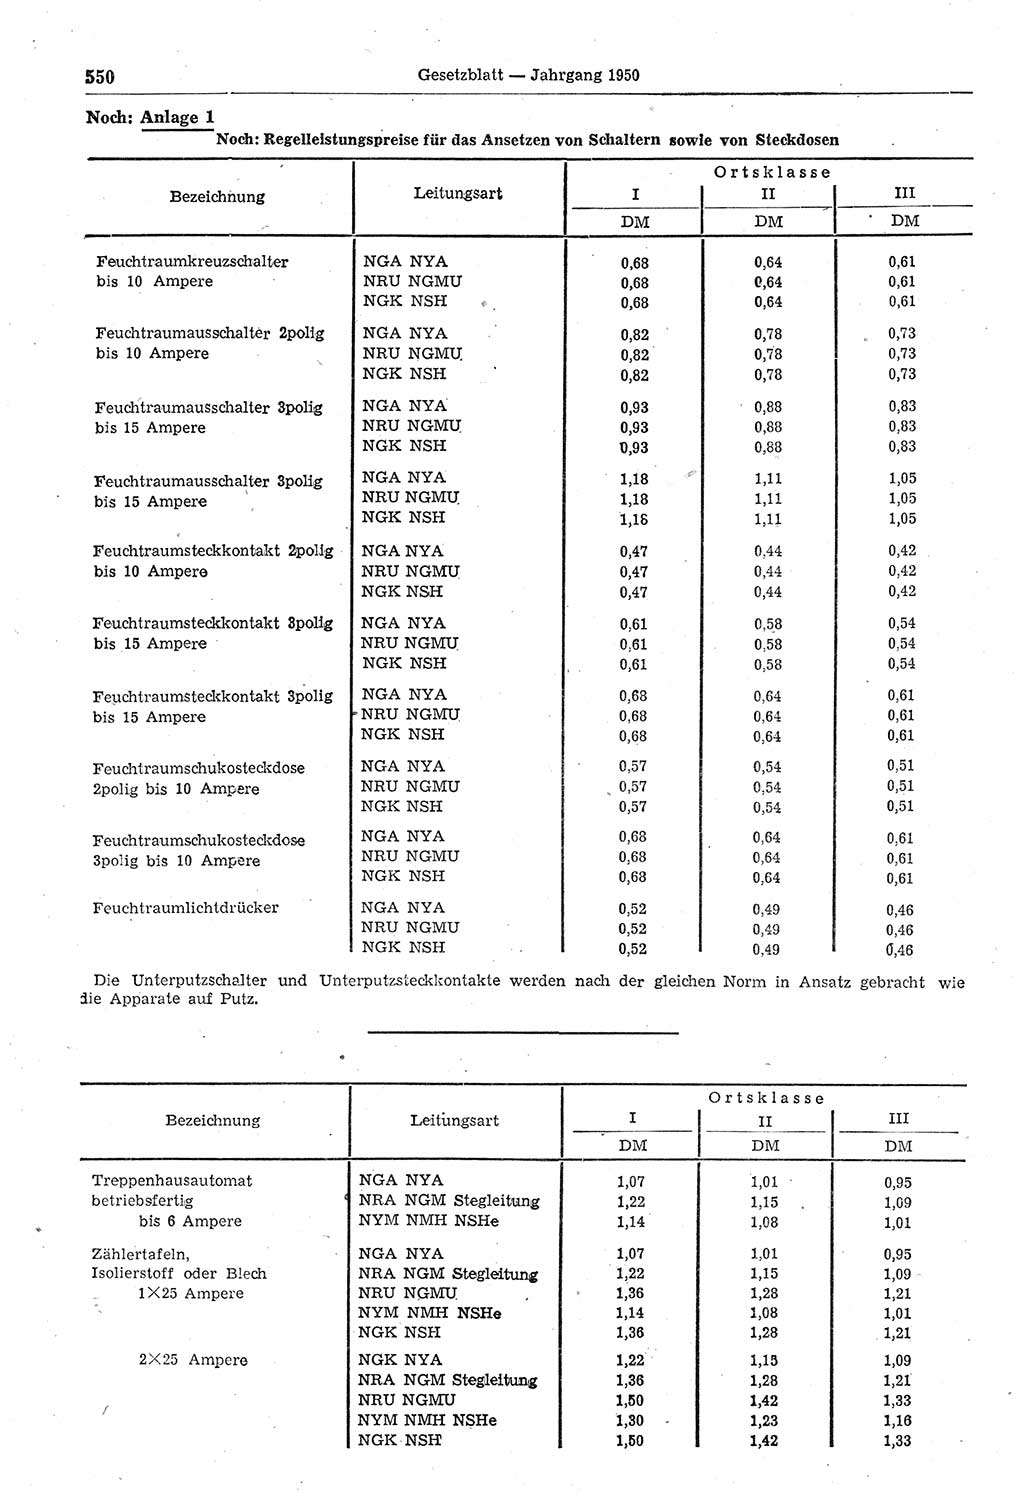 Gesetzblatt (GBl.) der Deutschen Demokratischen Republik (DDR) 1950, Seite 550 (GBl. DDR 1950, S. 550)